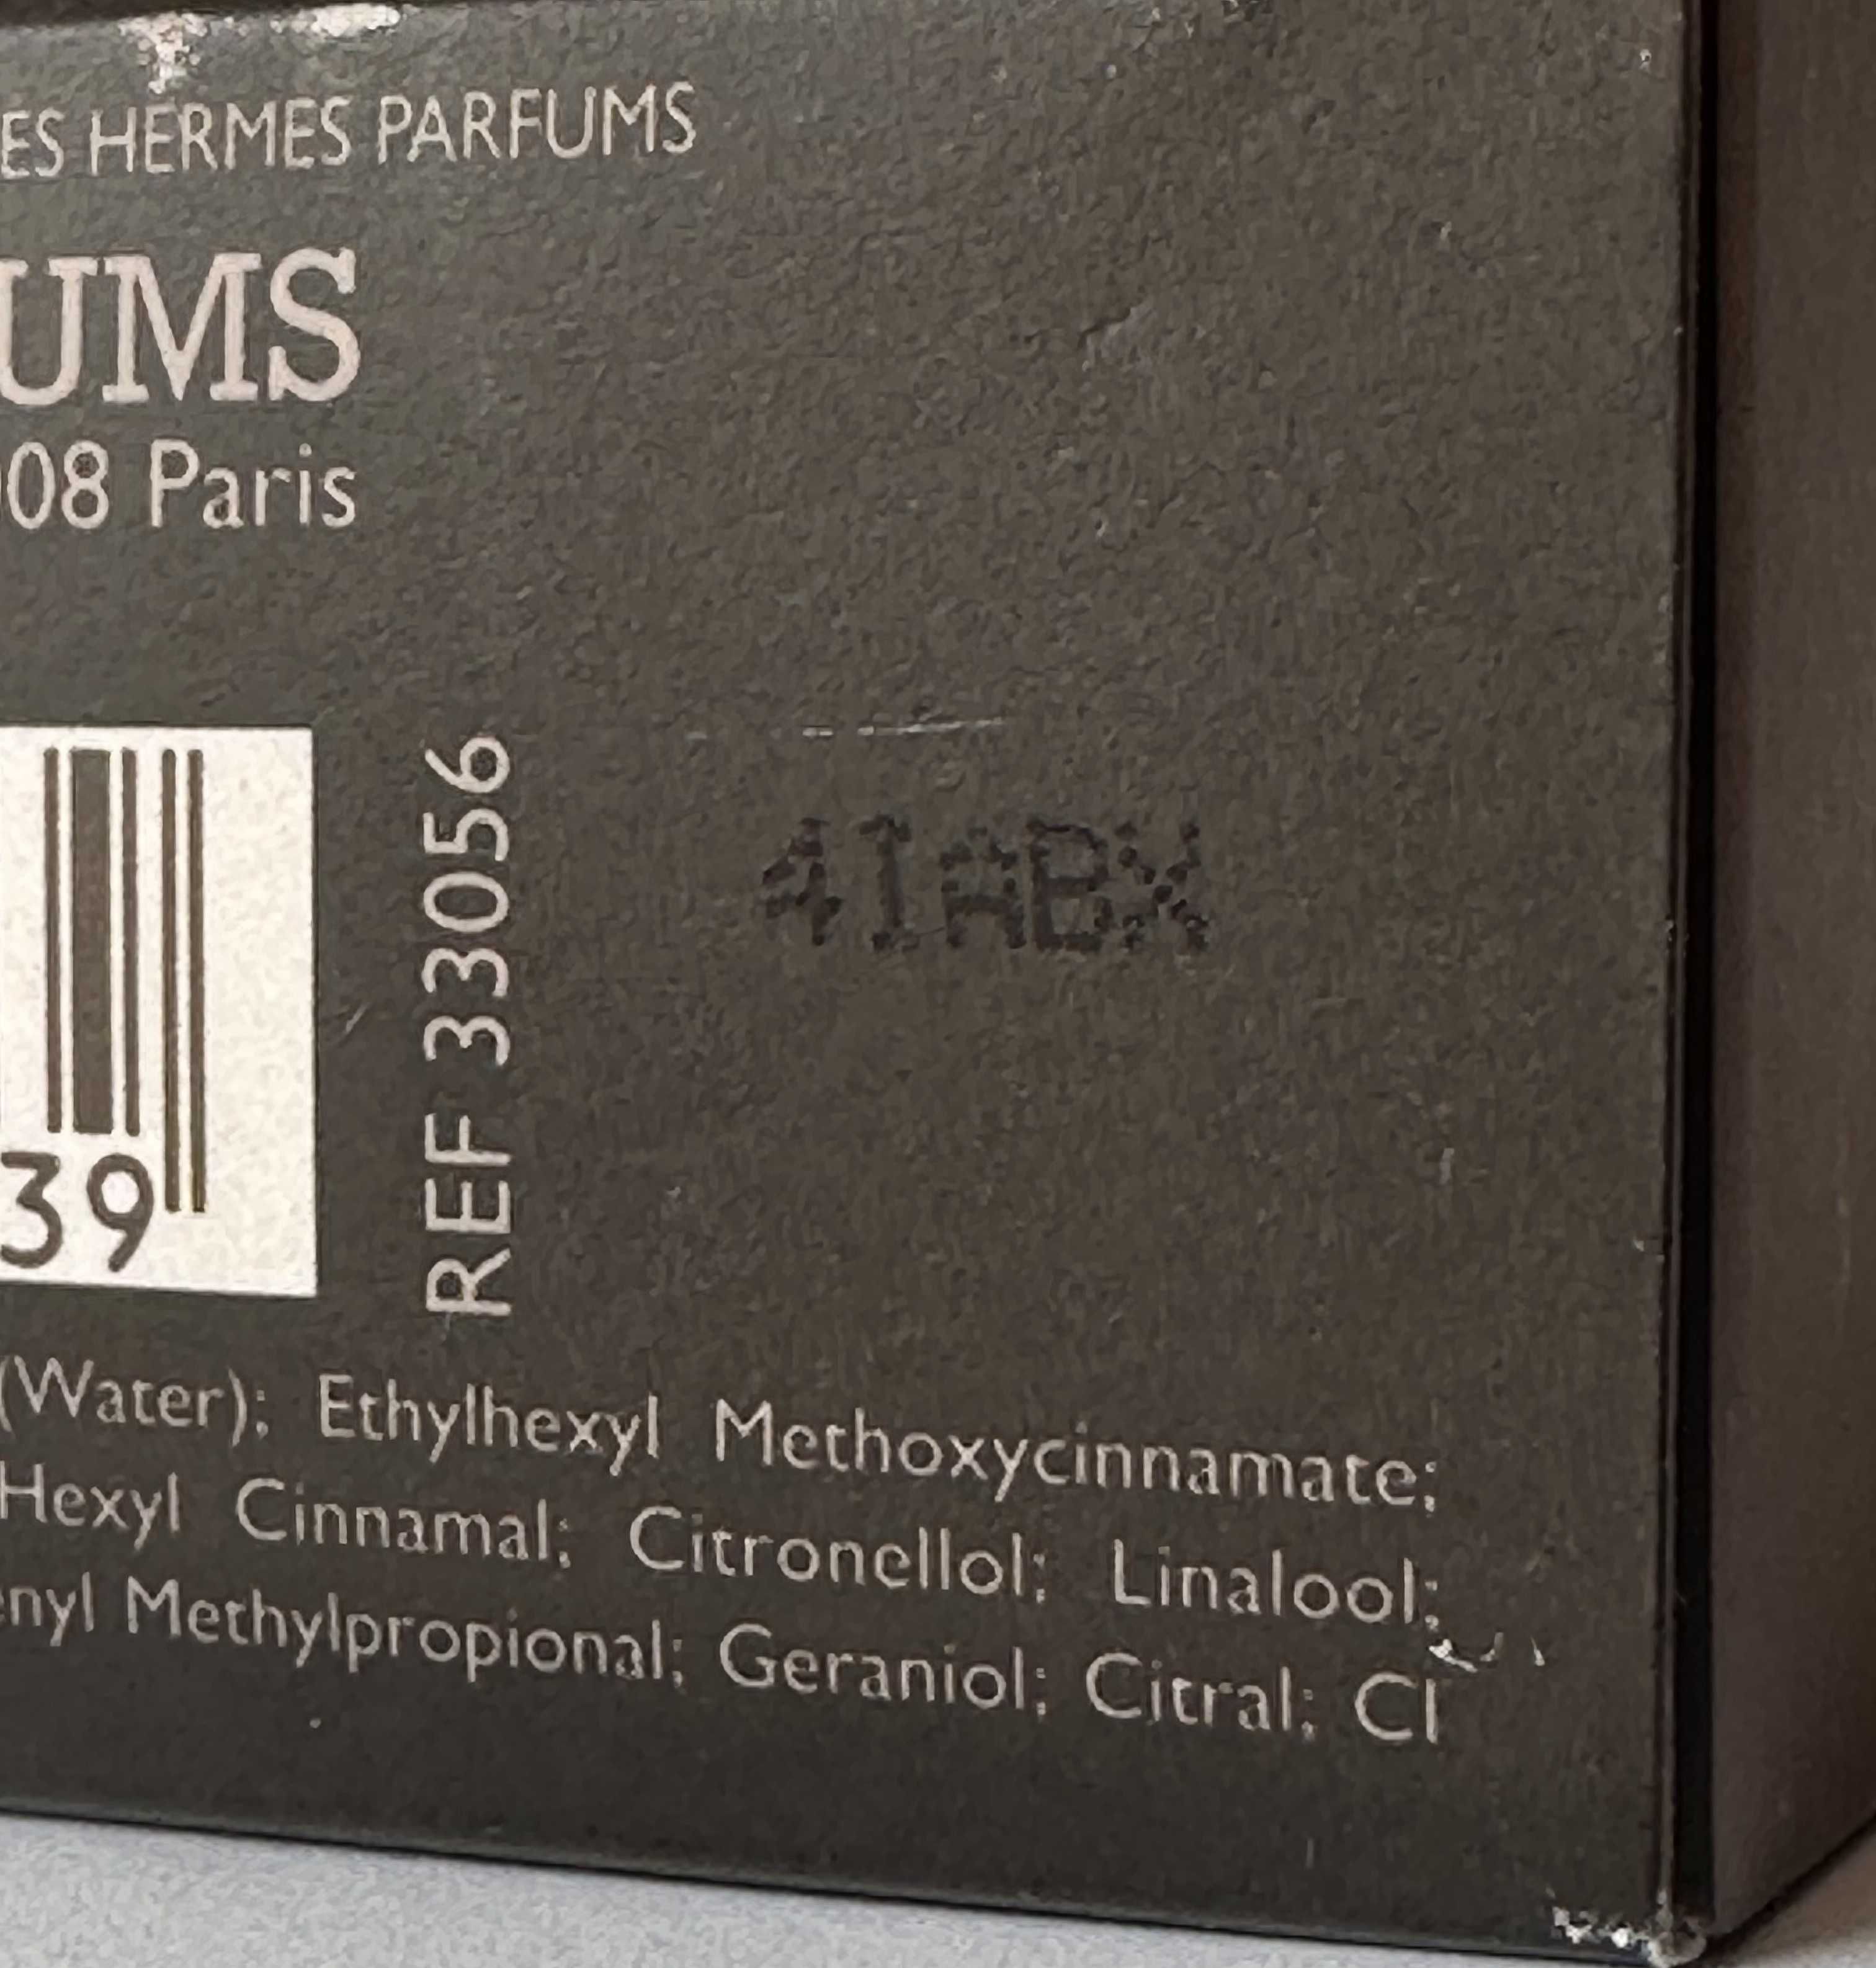 Hermes Terre d'Hermes Eau Tres Fraiche Metal Edition 149/150 ml EDT